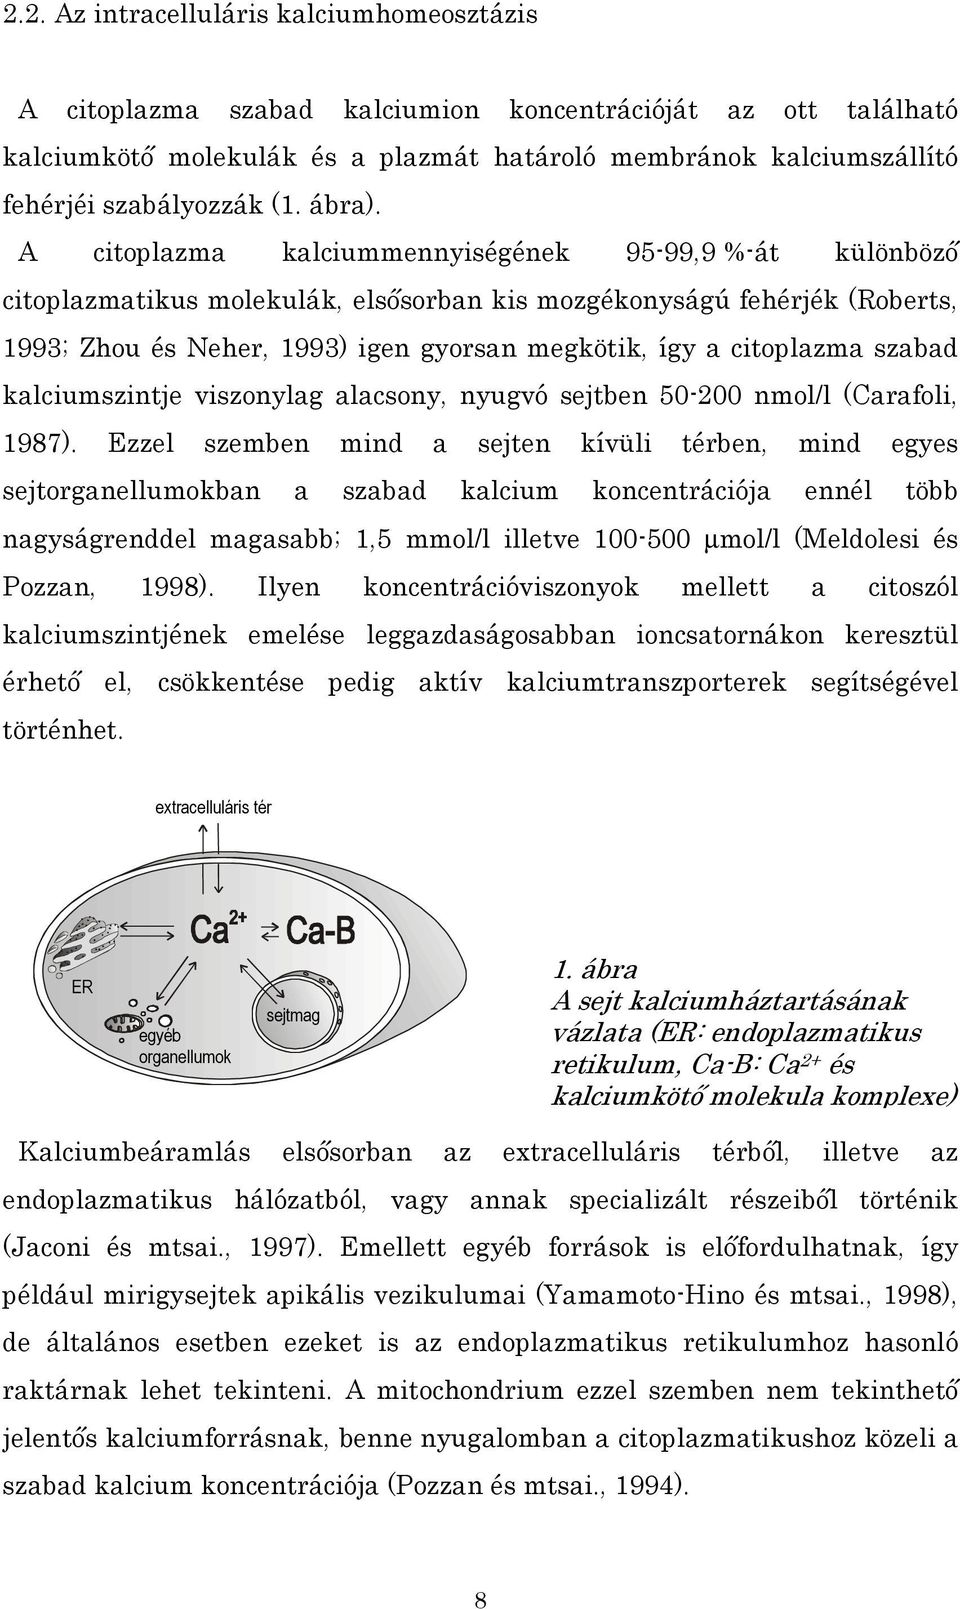 A citoplazma kalciummennyiségének 95-99,9 %-át különböző citoplazmatikus molekulák, elsősorban kis mozgékonyságú fehérjék (Roberts, 1993; Zhou és Neher, 1993) igen gyorsan megkötik, így a citoplazma